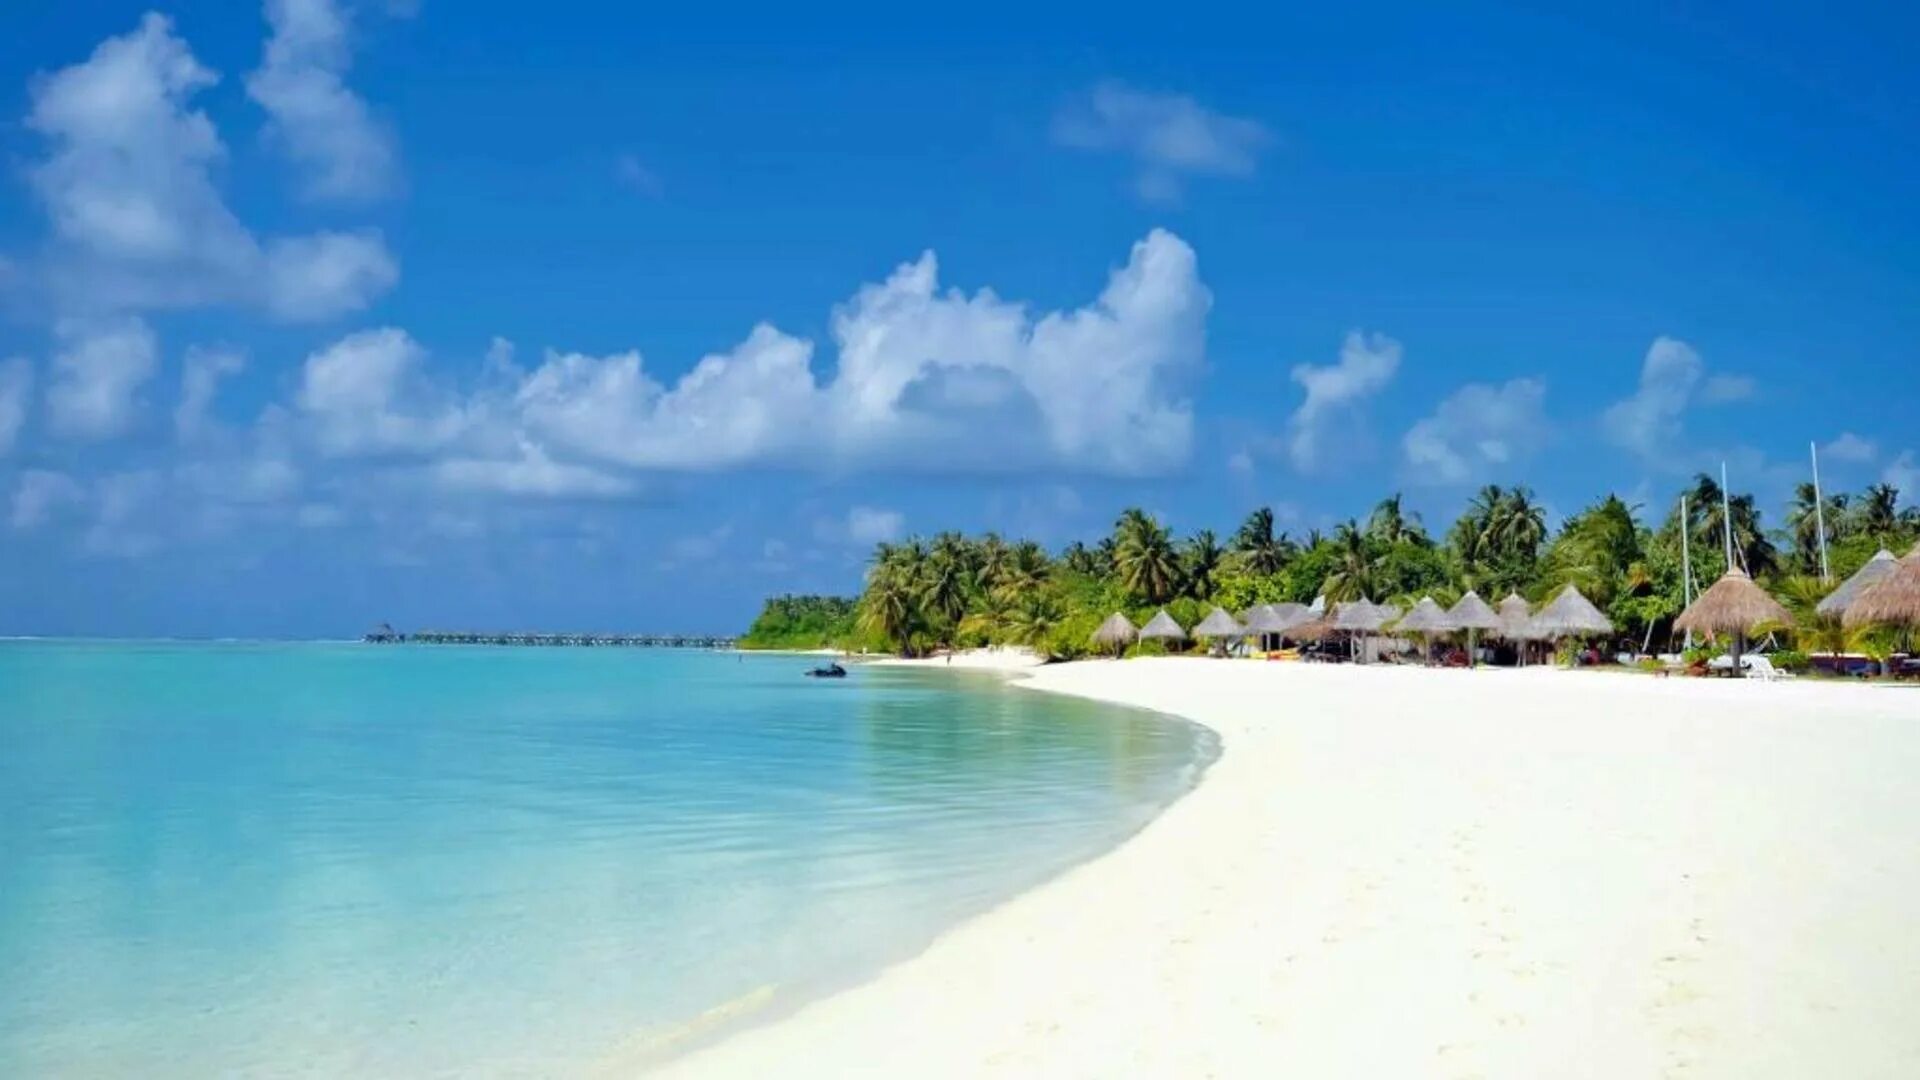 Сан Айленд Резорт Мальдивы. Sun Island Resort 5 Мальдивы. Остров Sun Island на Мальдивах. Sun Island Resort & Spa 5 ***** (Ари Атолл). Island resort spa мальдивы